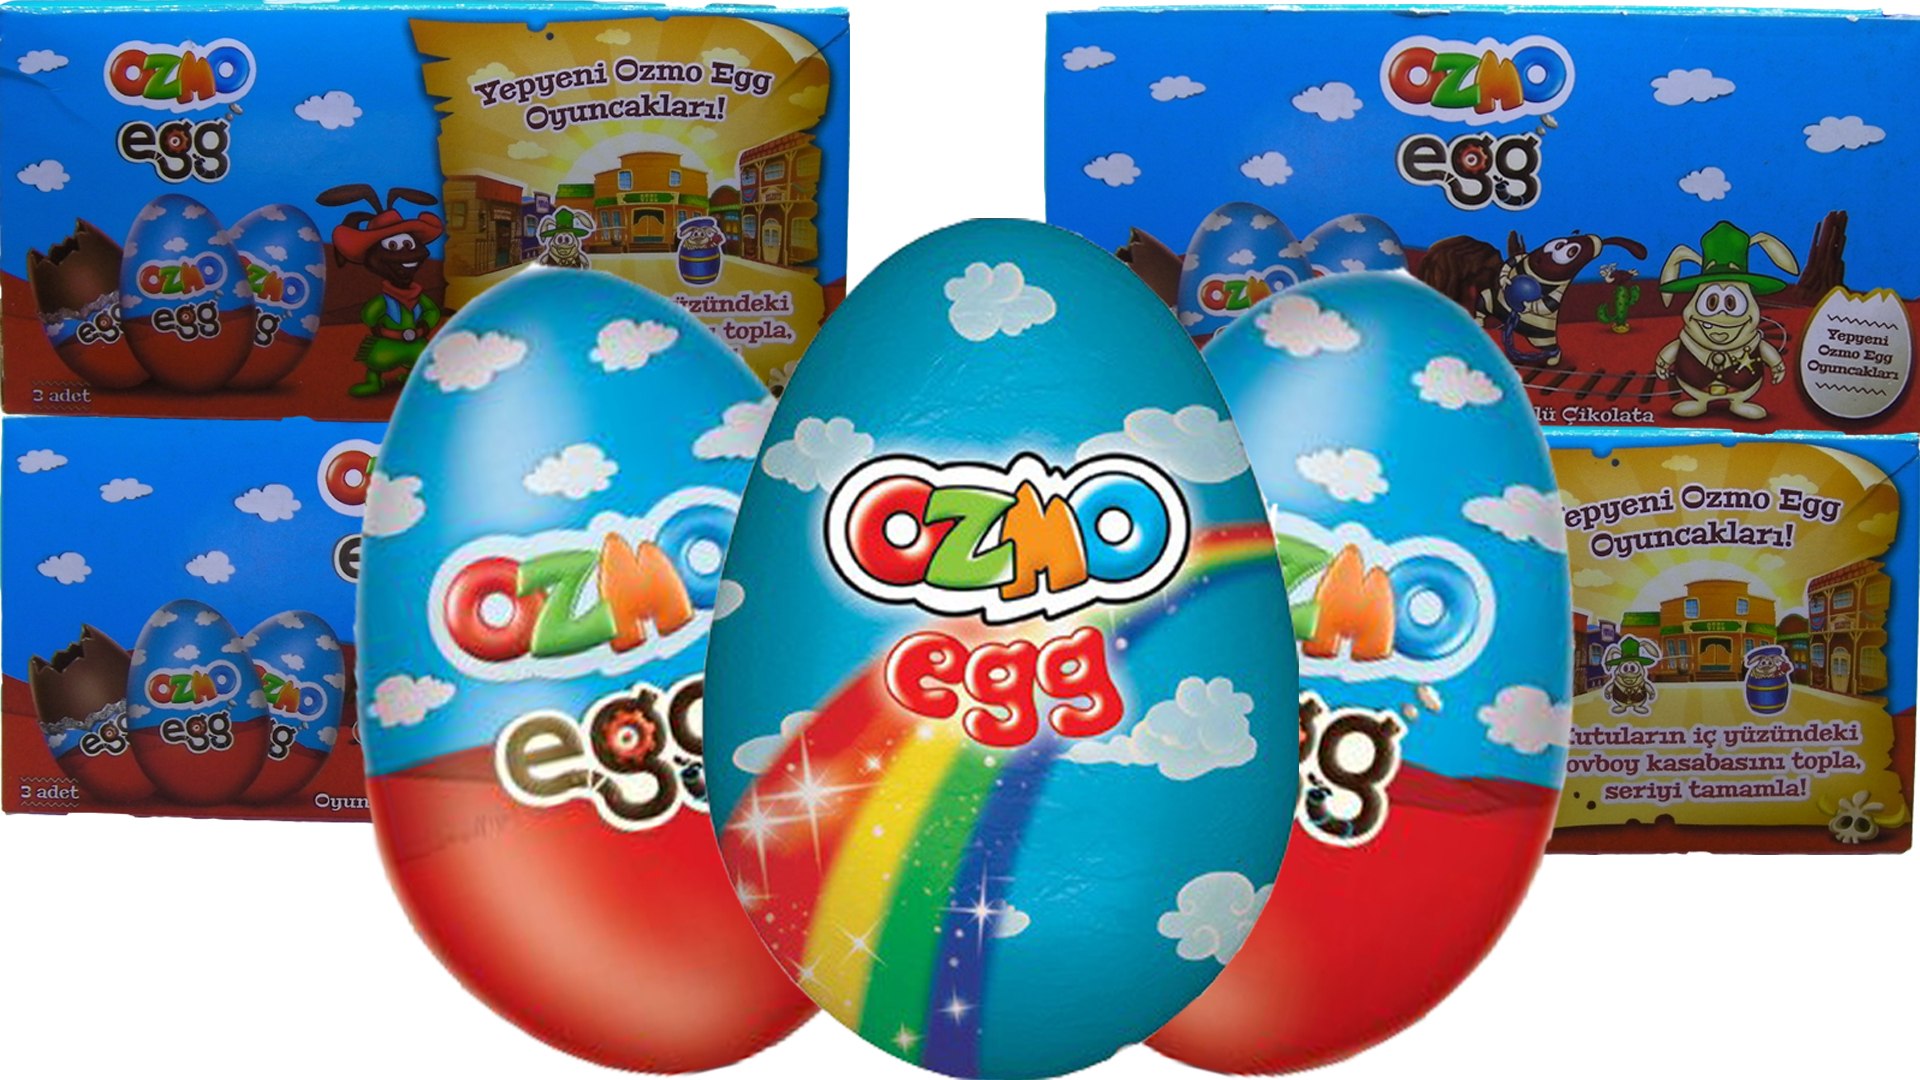 Ozmo Egg Sürpriz Yumurta Açımı Cesur Astronotlar Akrobat çikolatalar -  Dailymotion Video